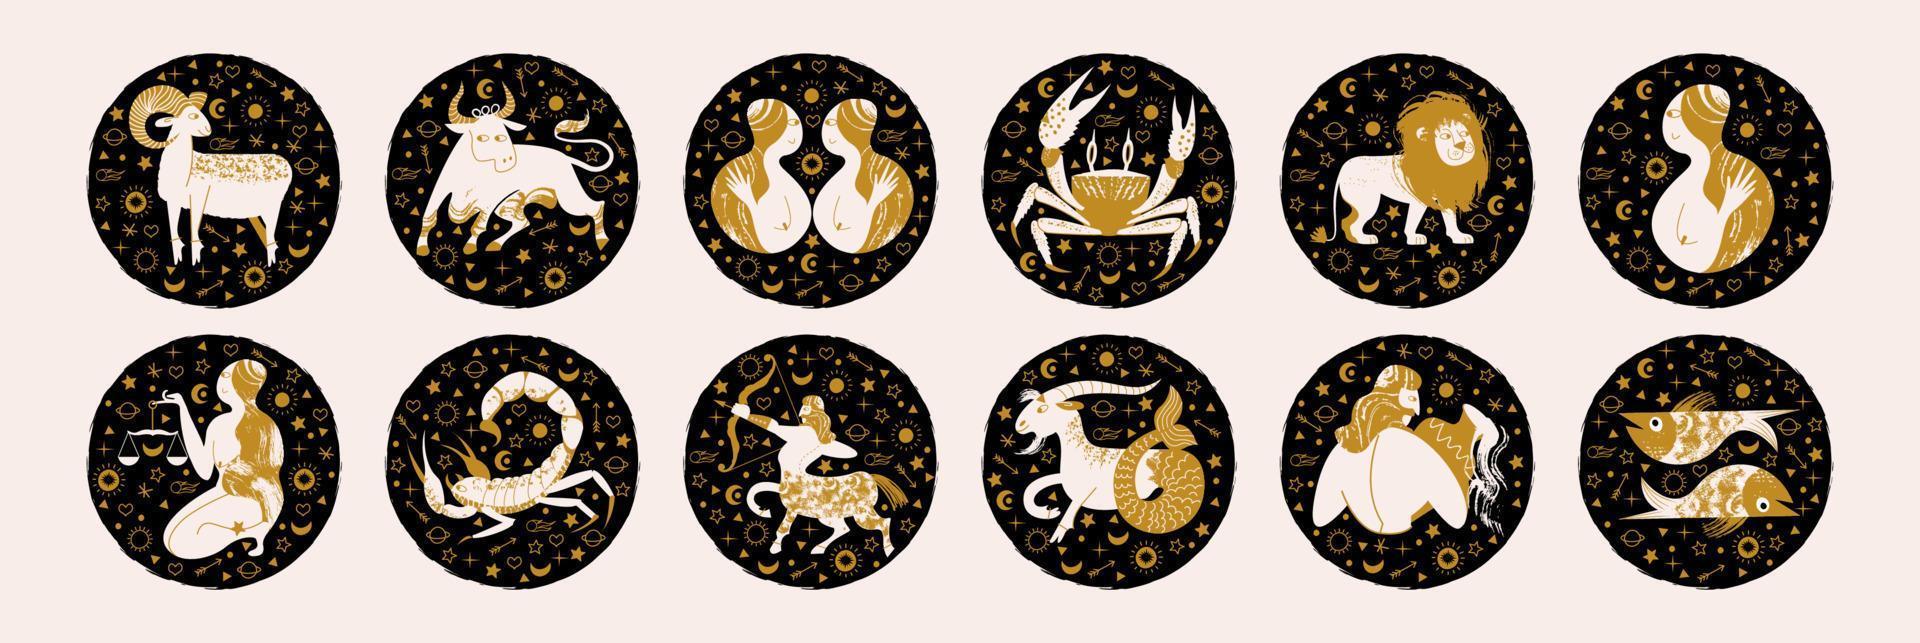 signo del zodiaco. emblemas vectoriales en un círculo negro. signos del zodíaco aries, tauro, géminis, cáncer, leo, virgo, libra, escorpio, sagitario, capricornio, acuario, piscis. vector